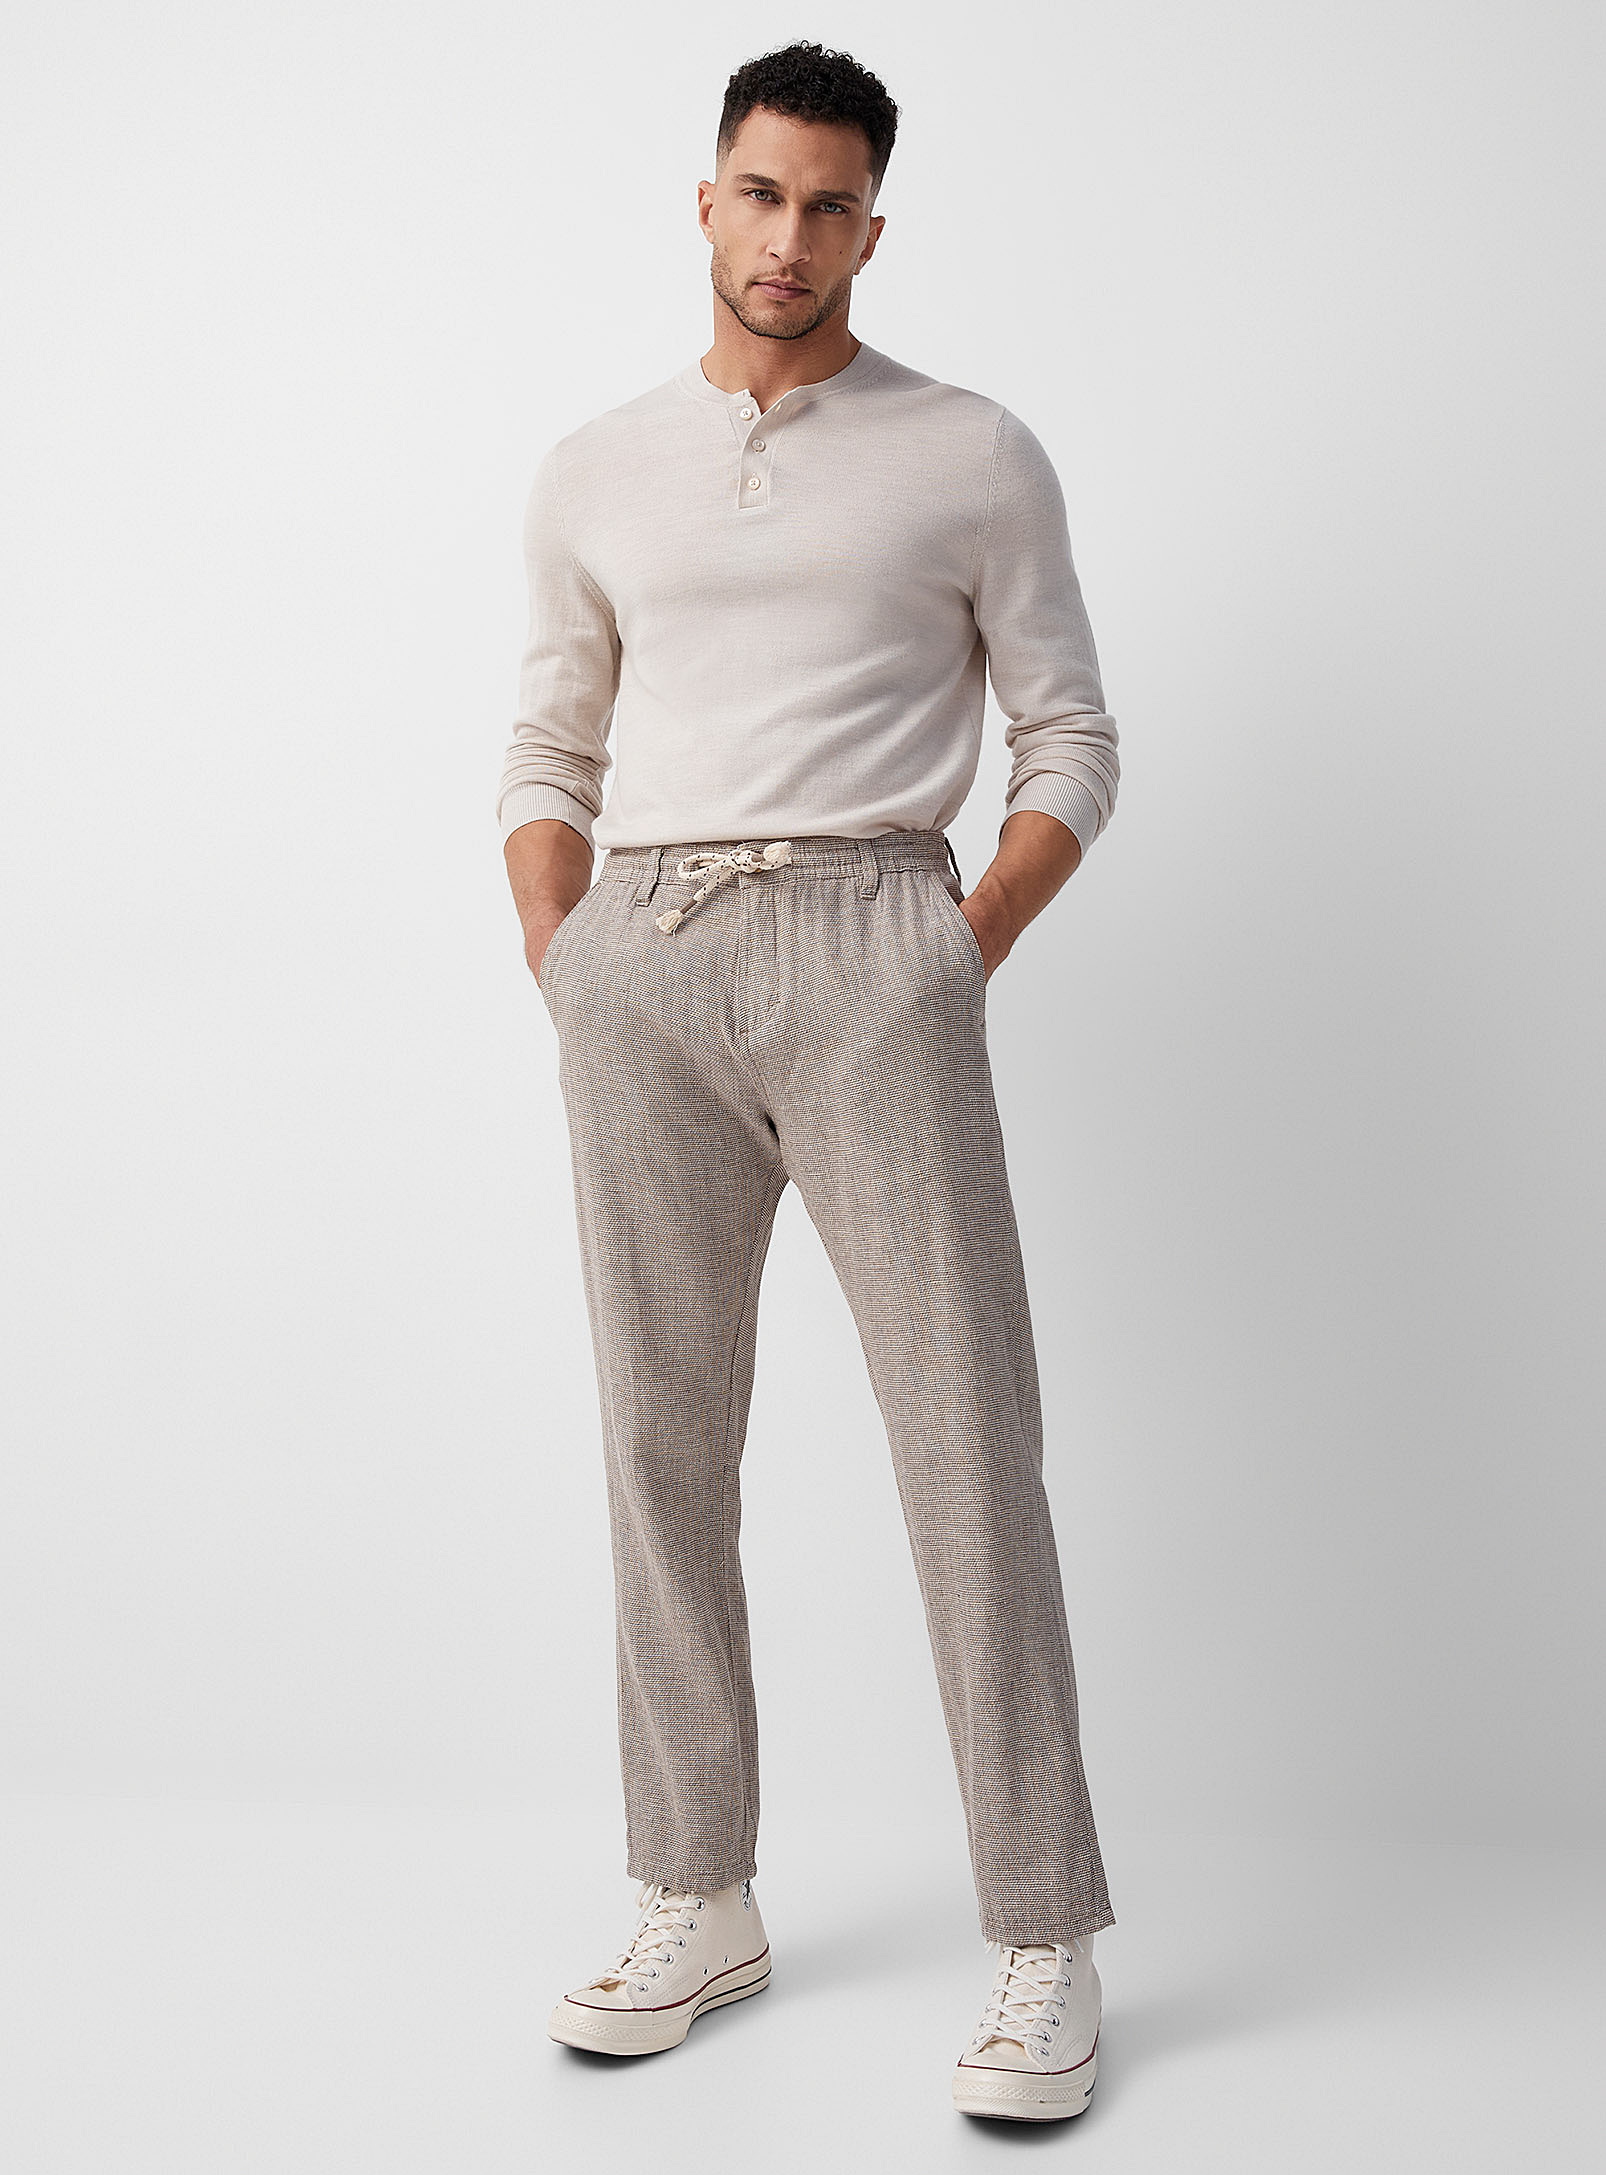 Projek Raw - Men's Linen-cotton two-tone pant